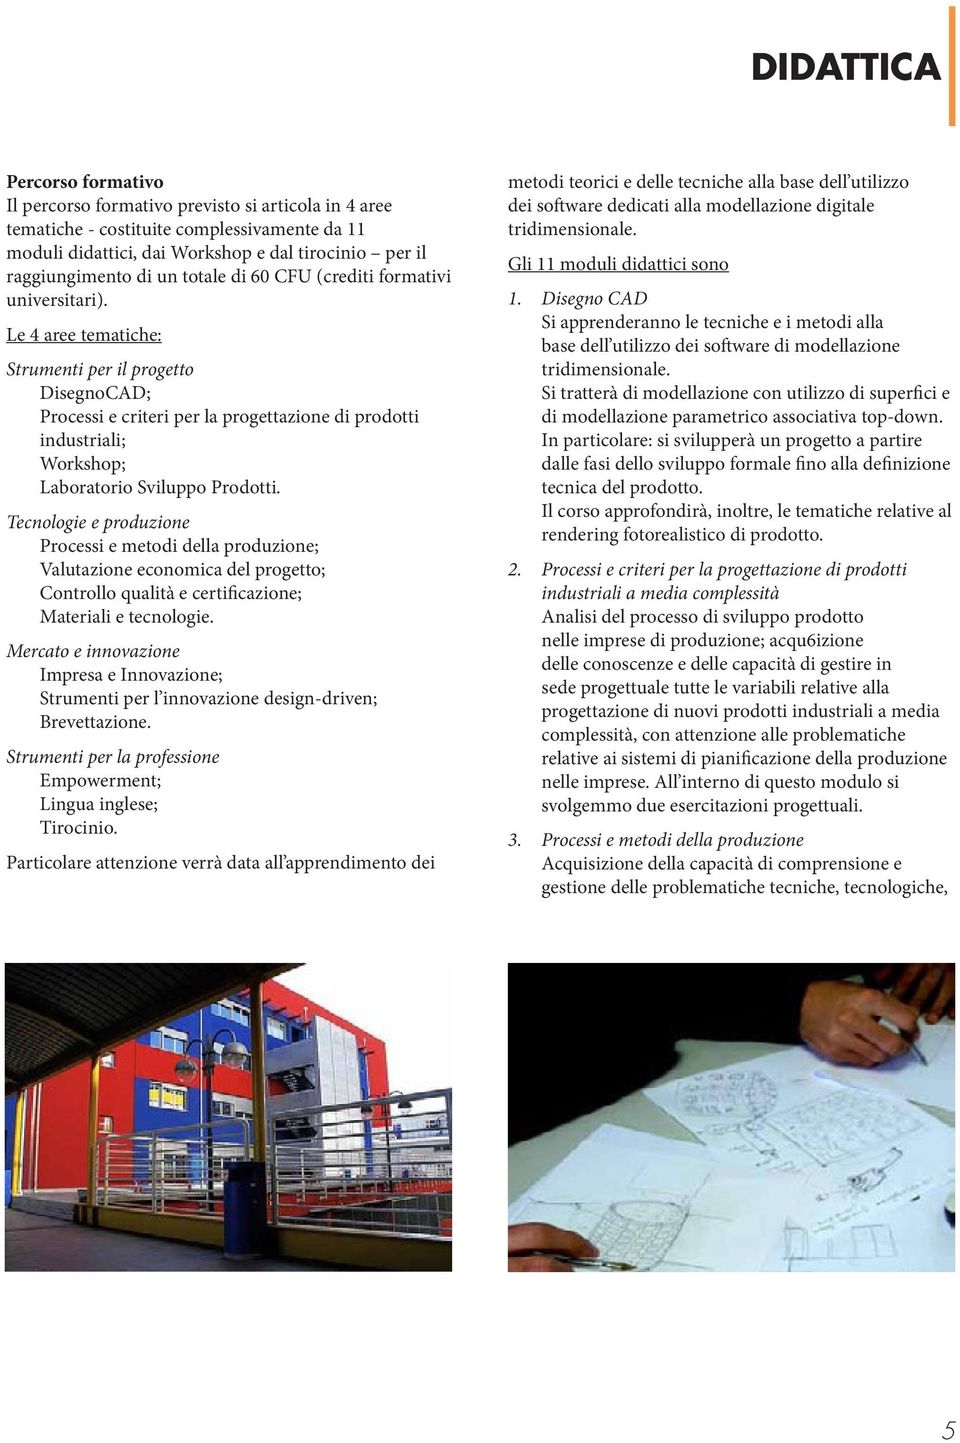 Le 4 aree tematiche: Strumenti per il progetto DisegnoCAD; Processi e criteri per la progettazione di prodotti industriali; Workshop; Laboratorio Sviluppo Prodotti.